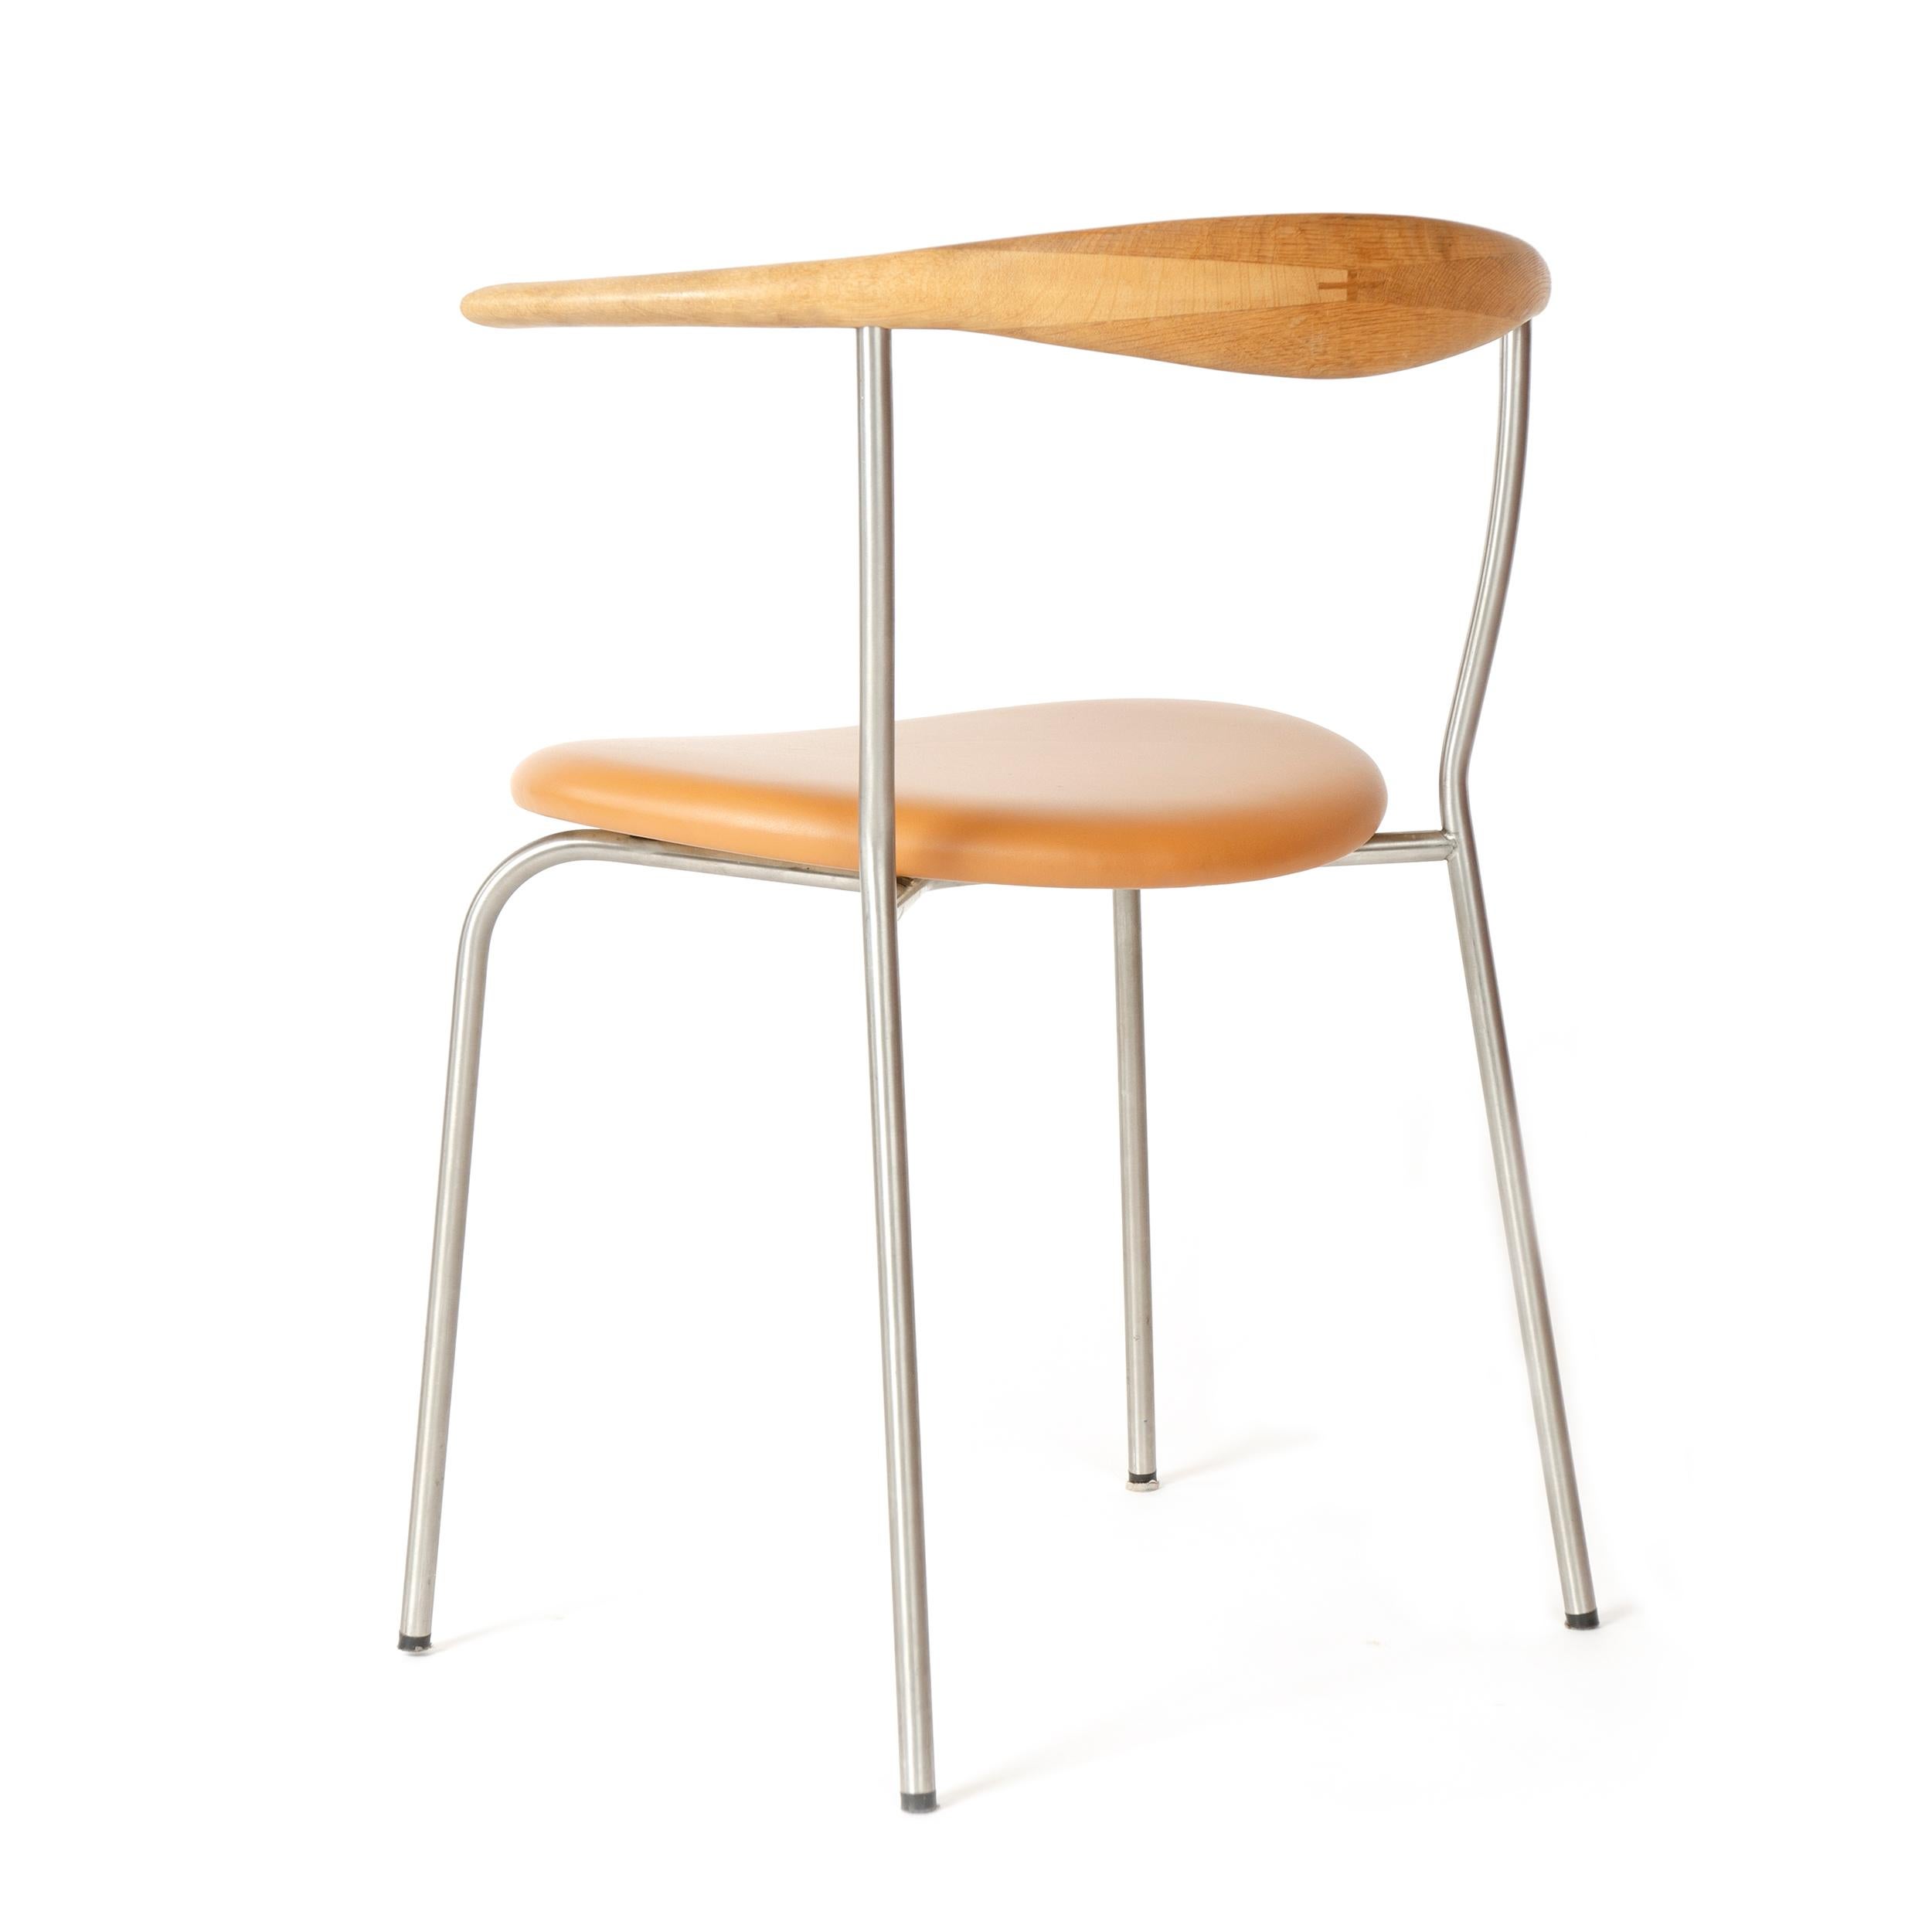 Steel Scandinavian Modern Model 701 Minimal Chair by Hans J. Wegner for PP Mobler